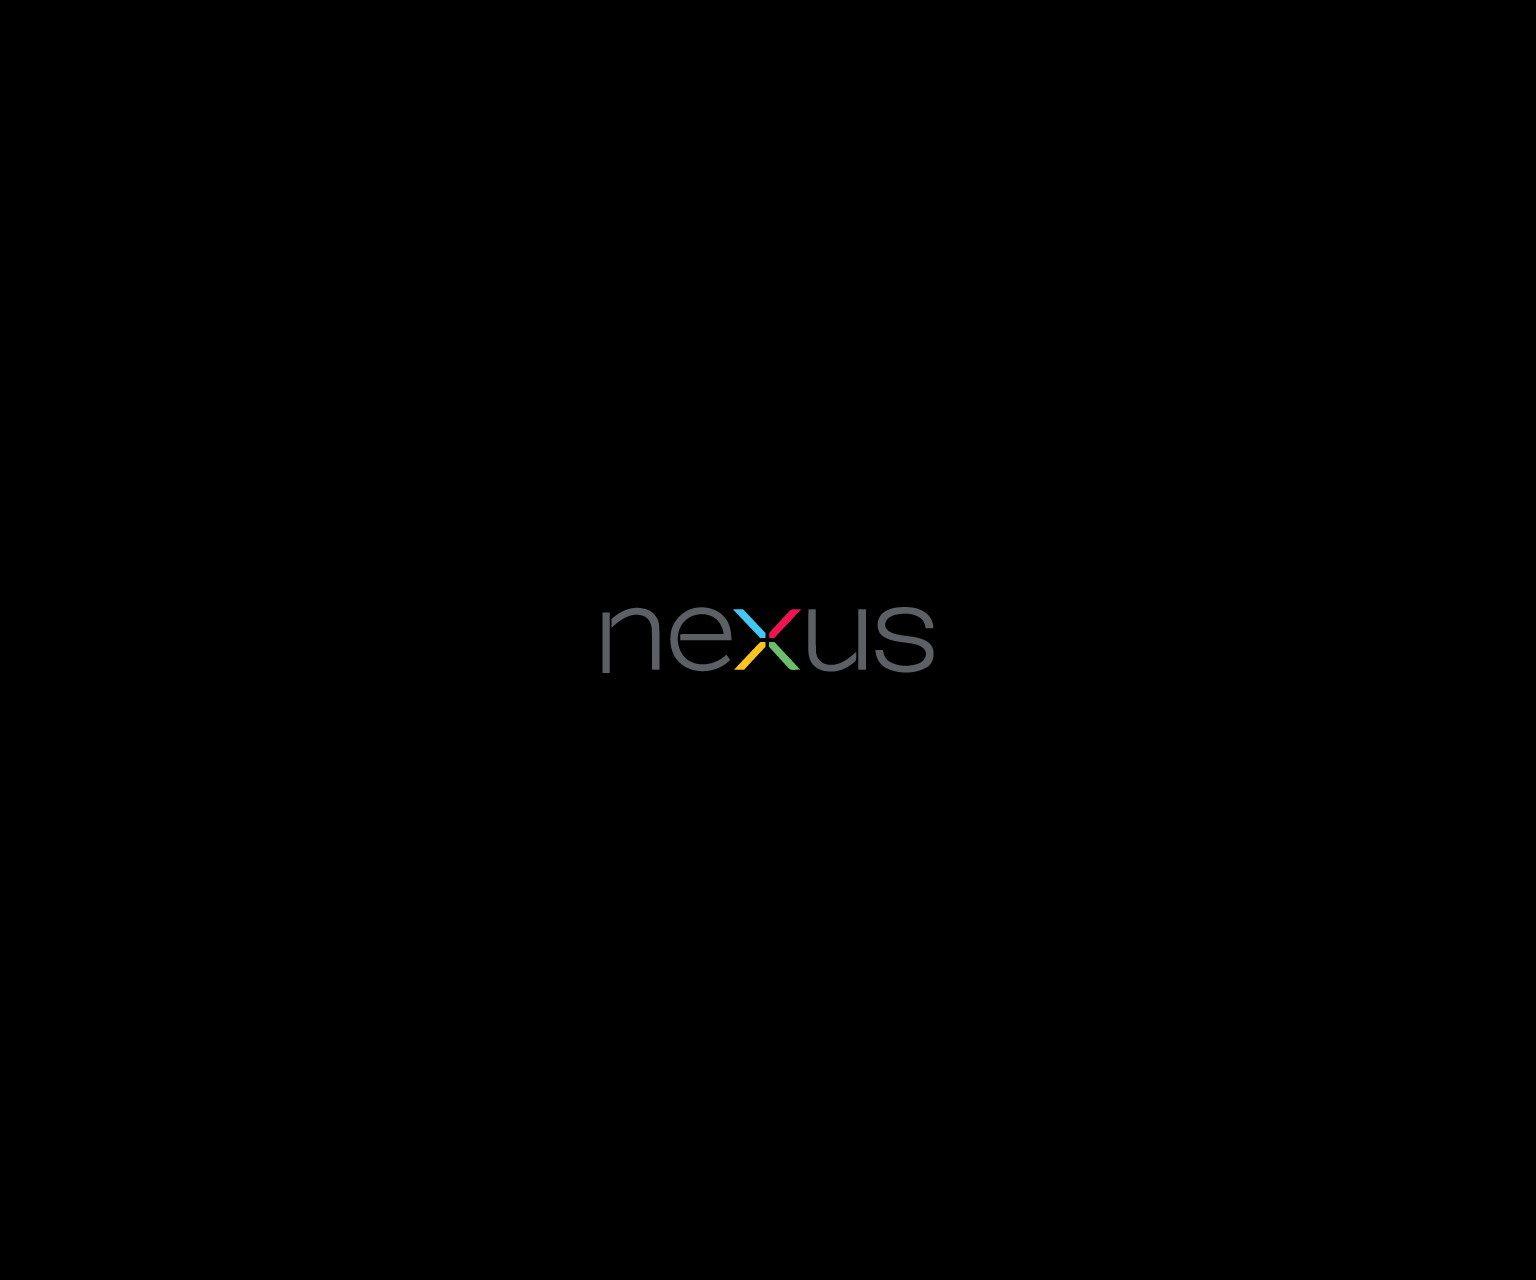 Google Nexus Wallpaper